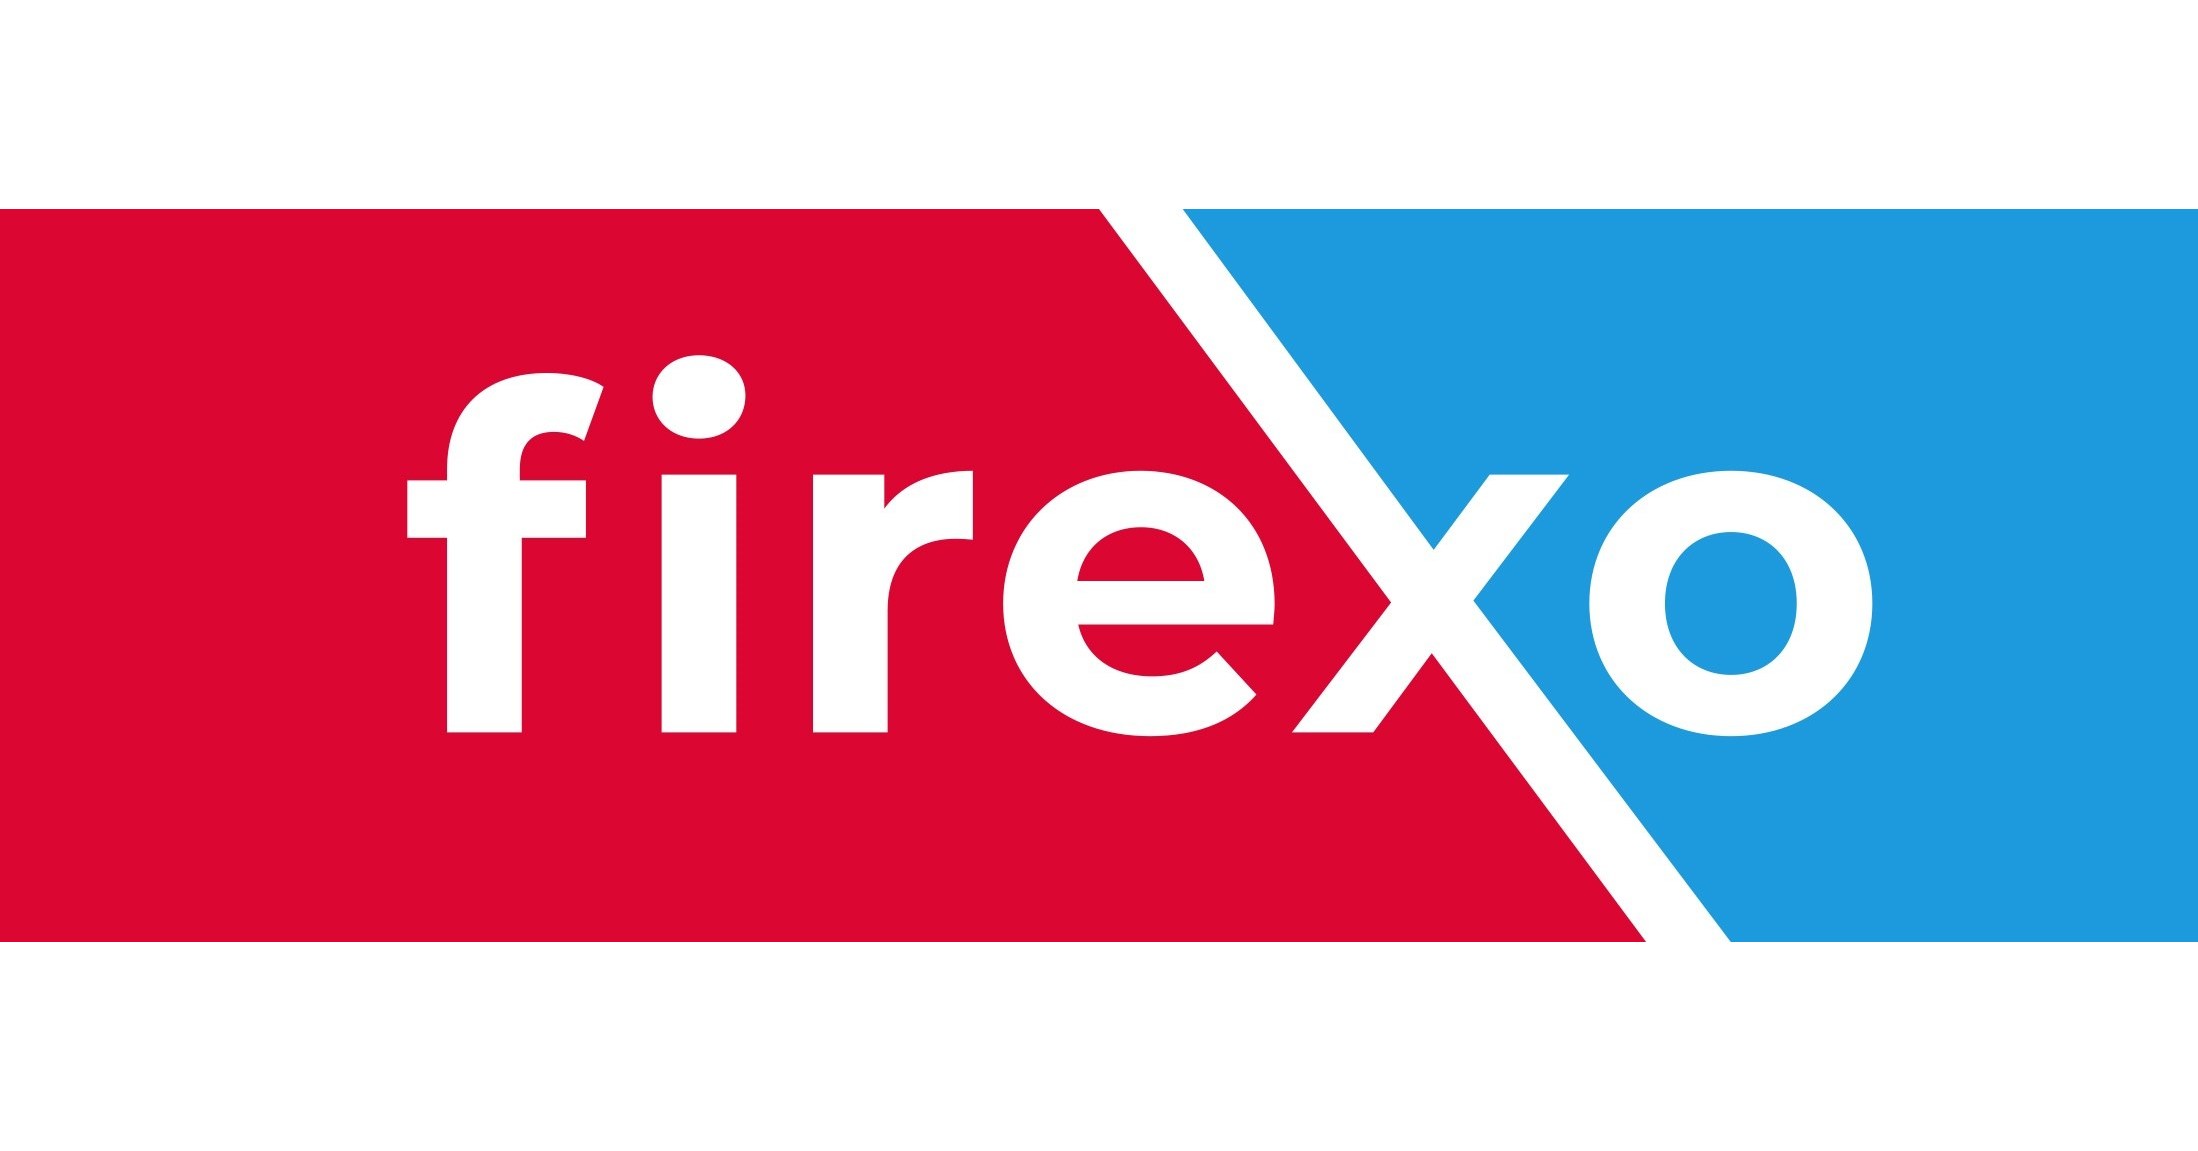 Extincteur Tous Feux Firexo 500ml, extincteurs 500ml, 7 en 1 pour Tout Type  d'incendie. Extincteurs